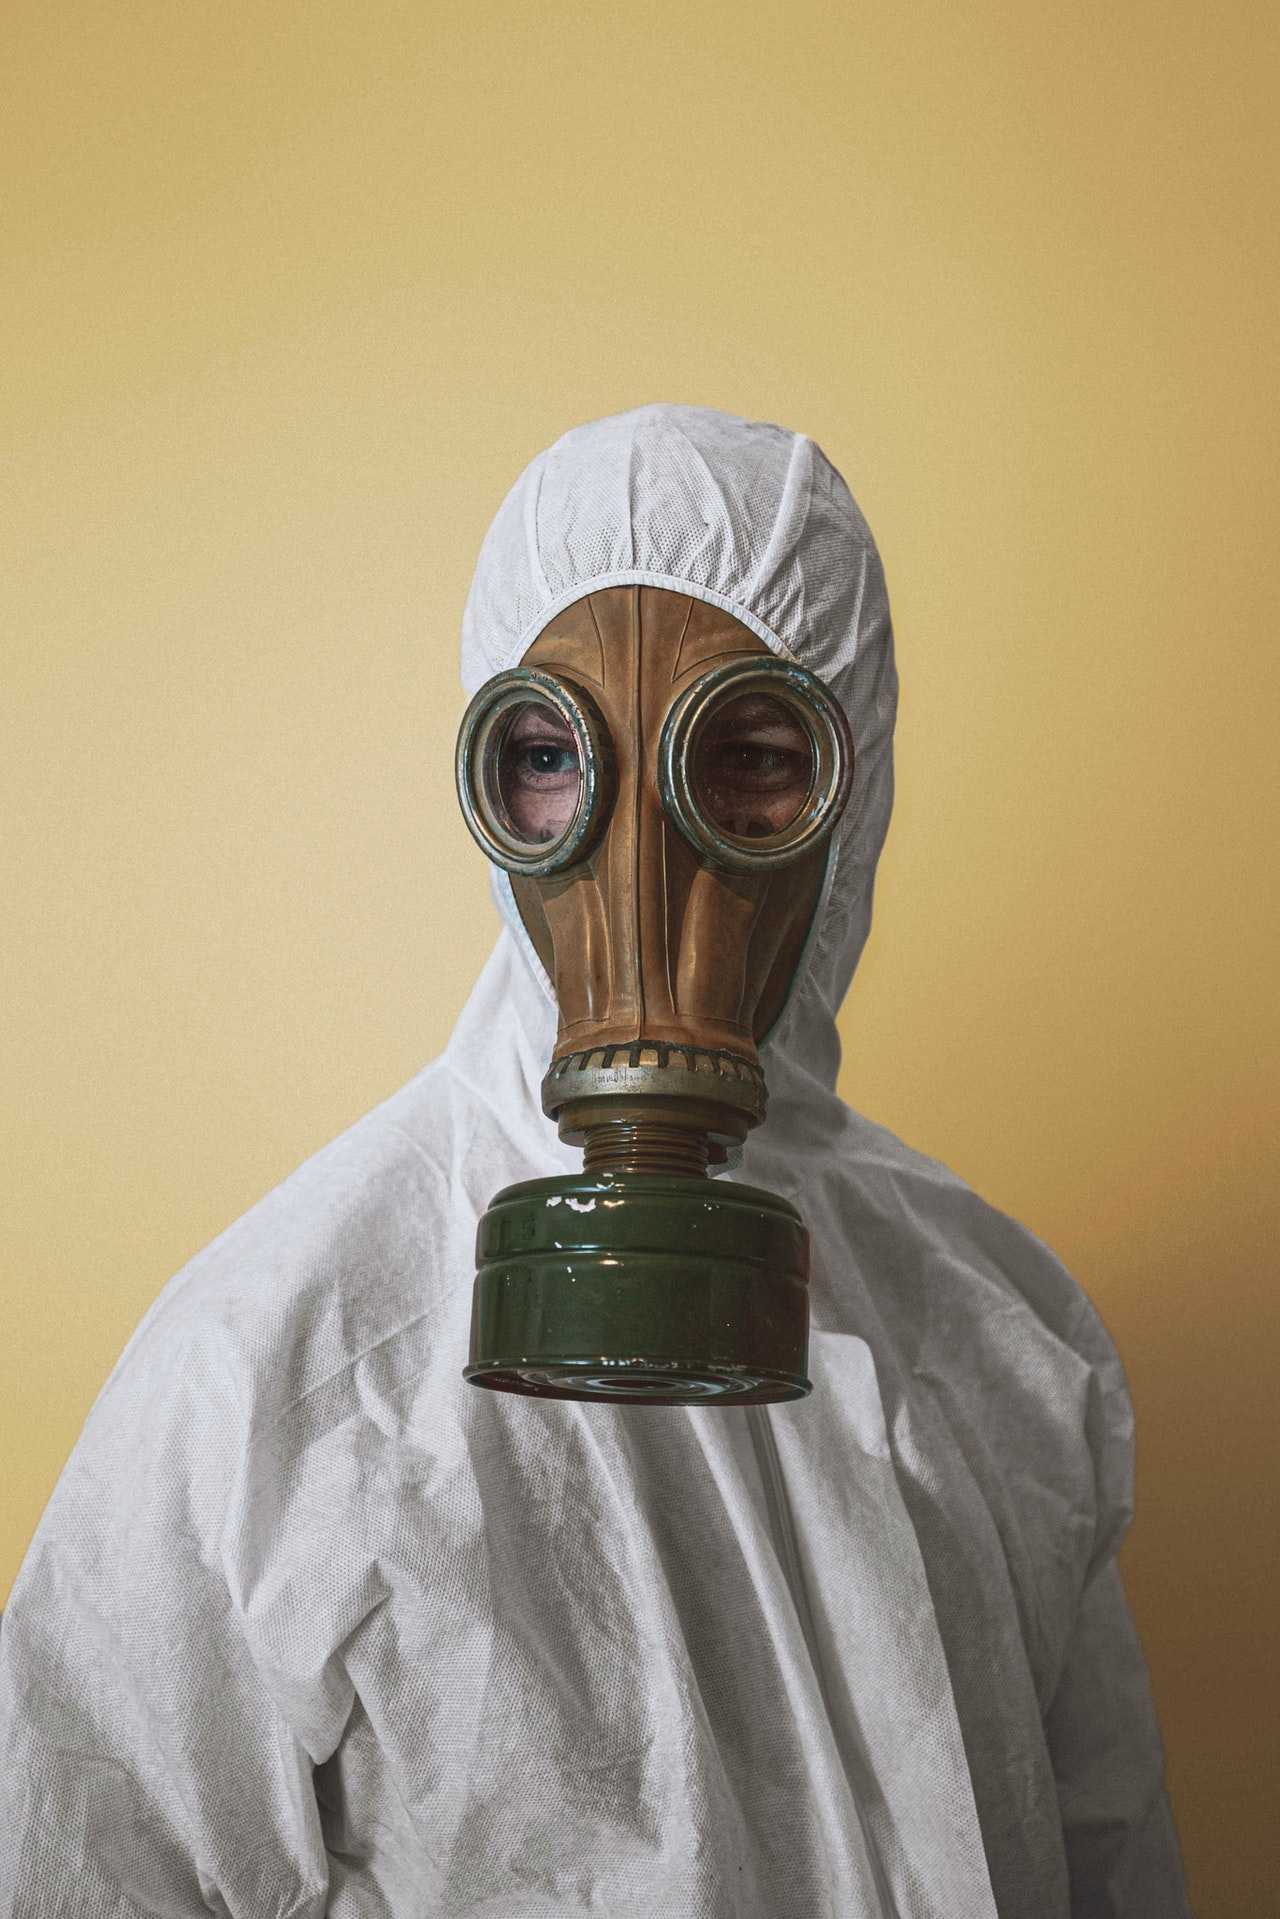 Masque à gaz : nucléaire, bactériologique, quel principe ?